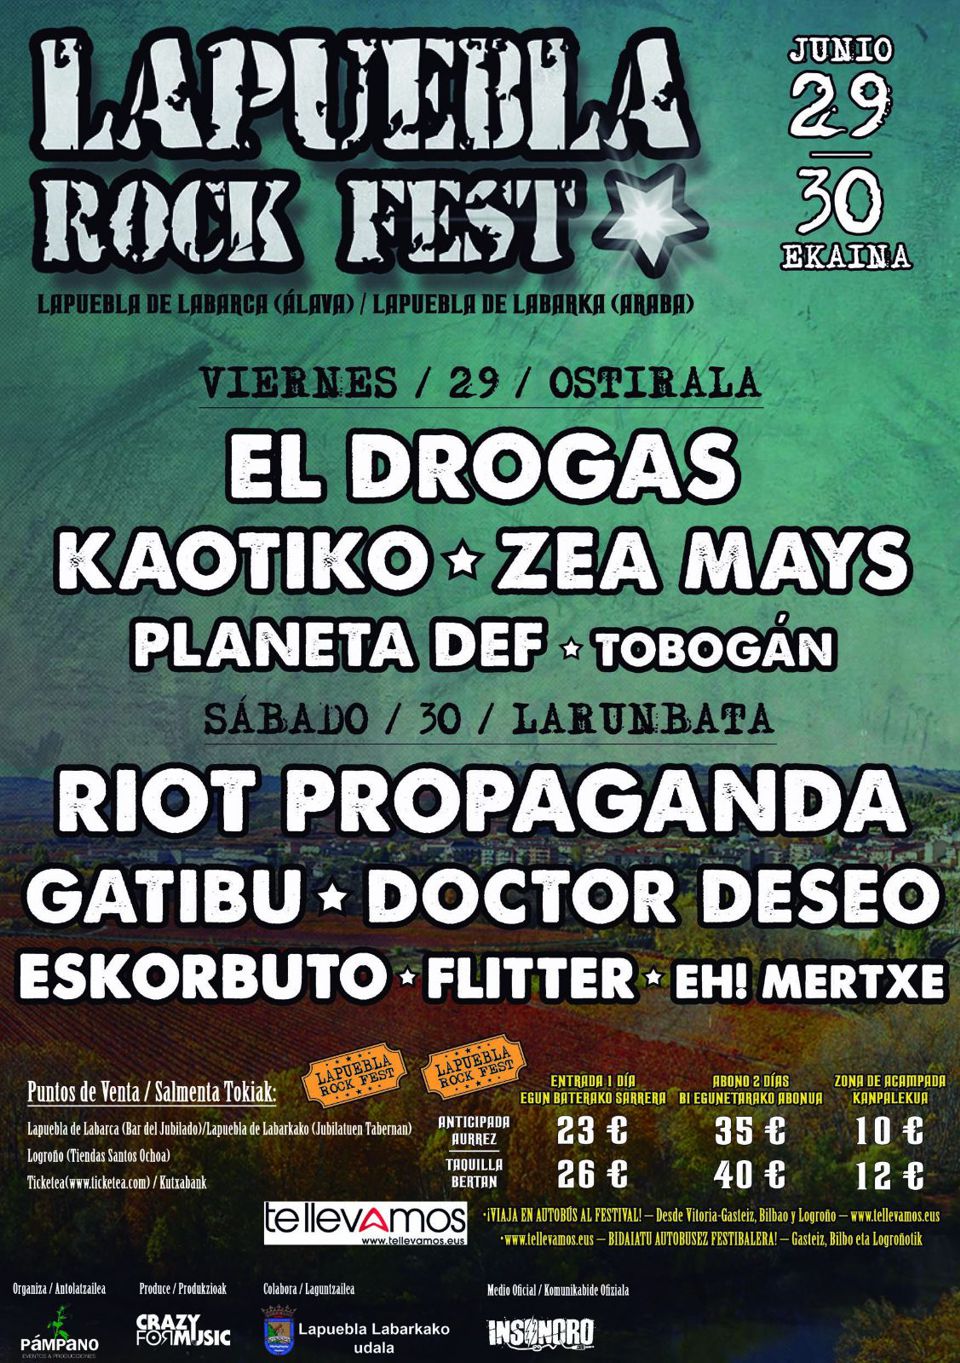 Todo listo para la segunda edición Lapuebla Rock Fest